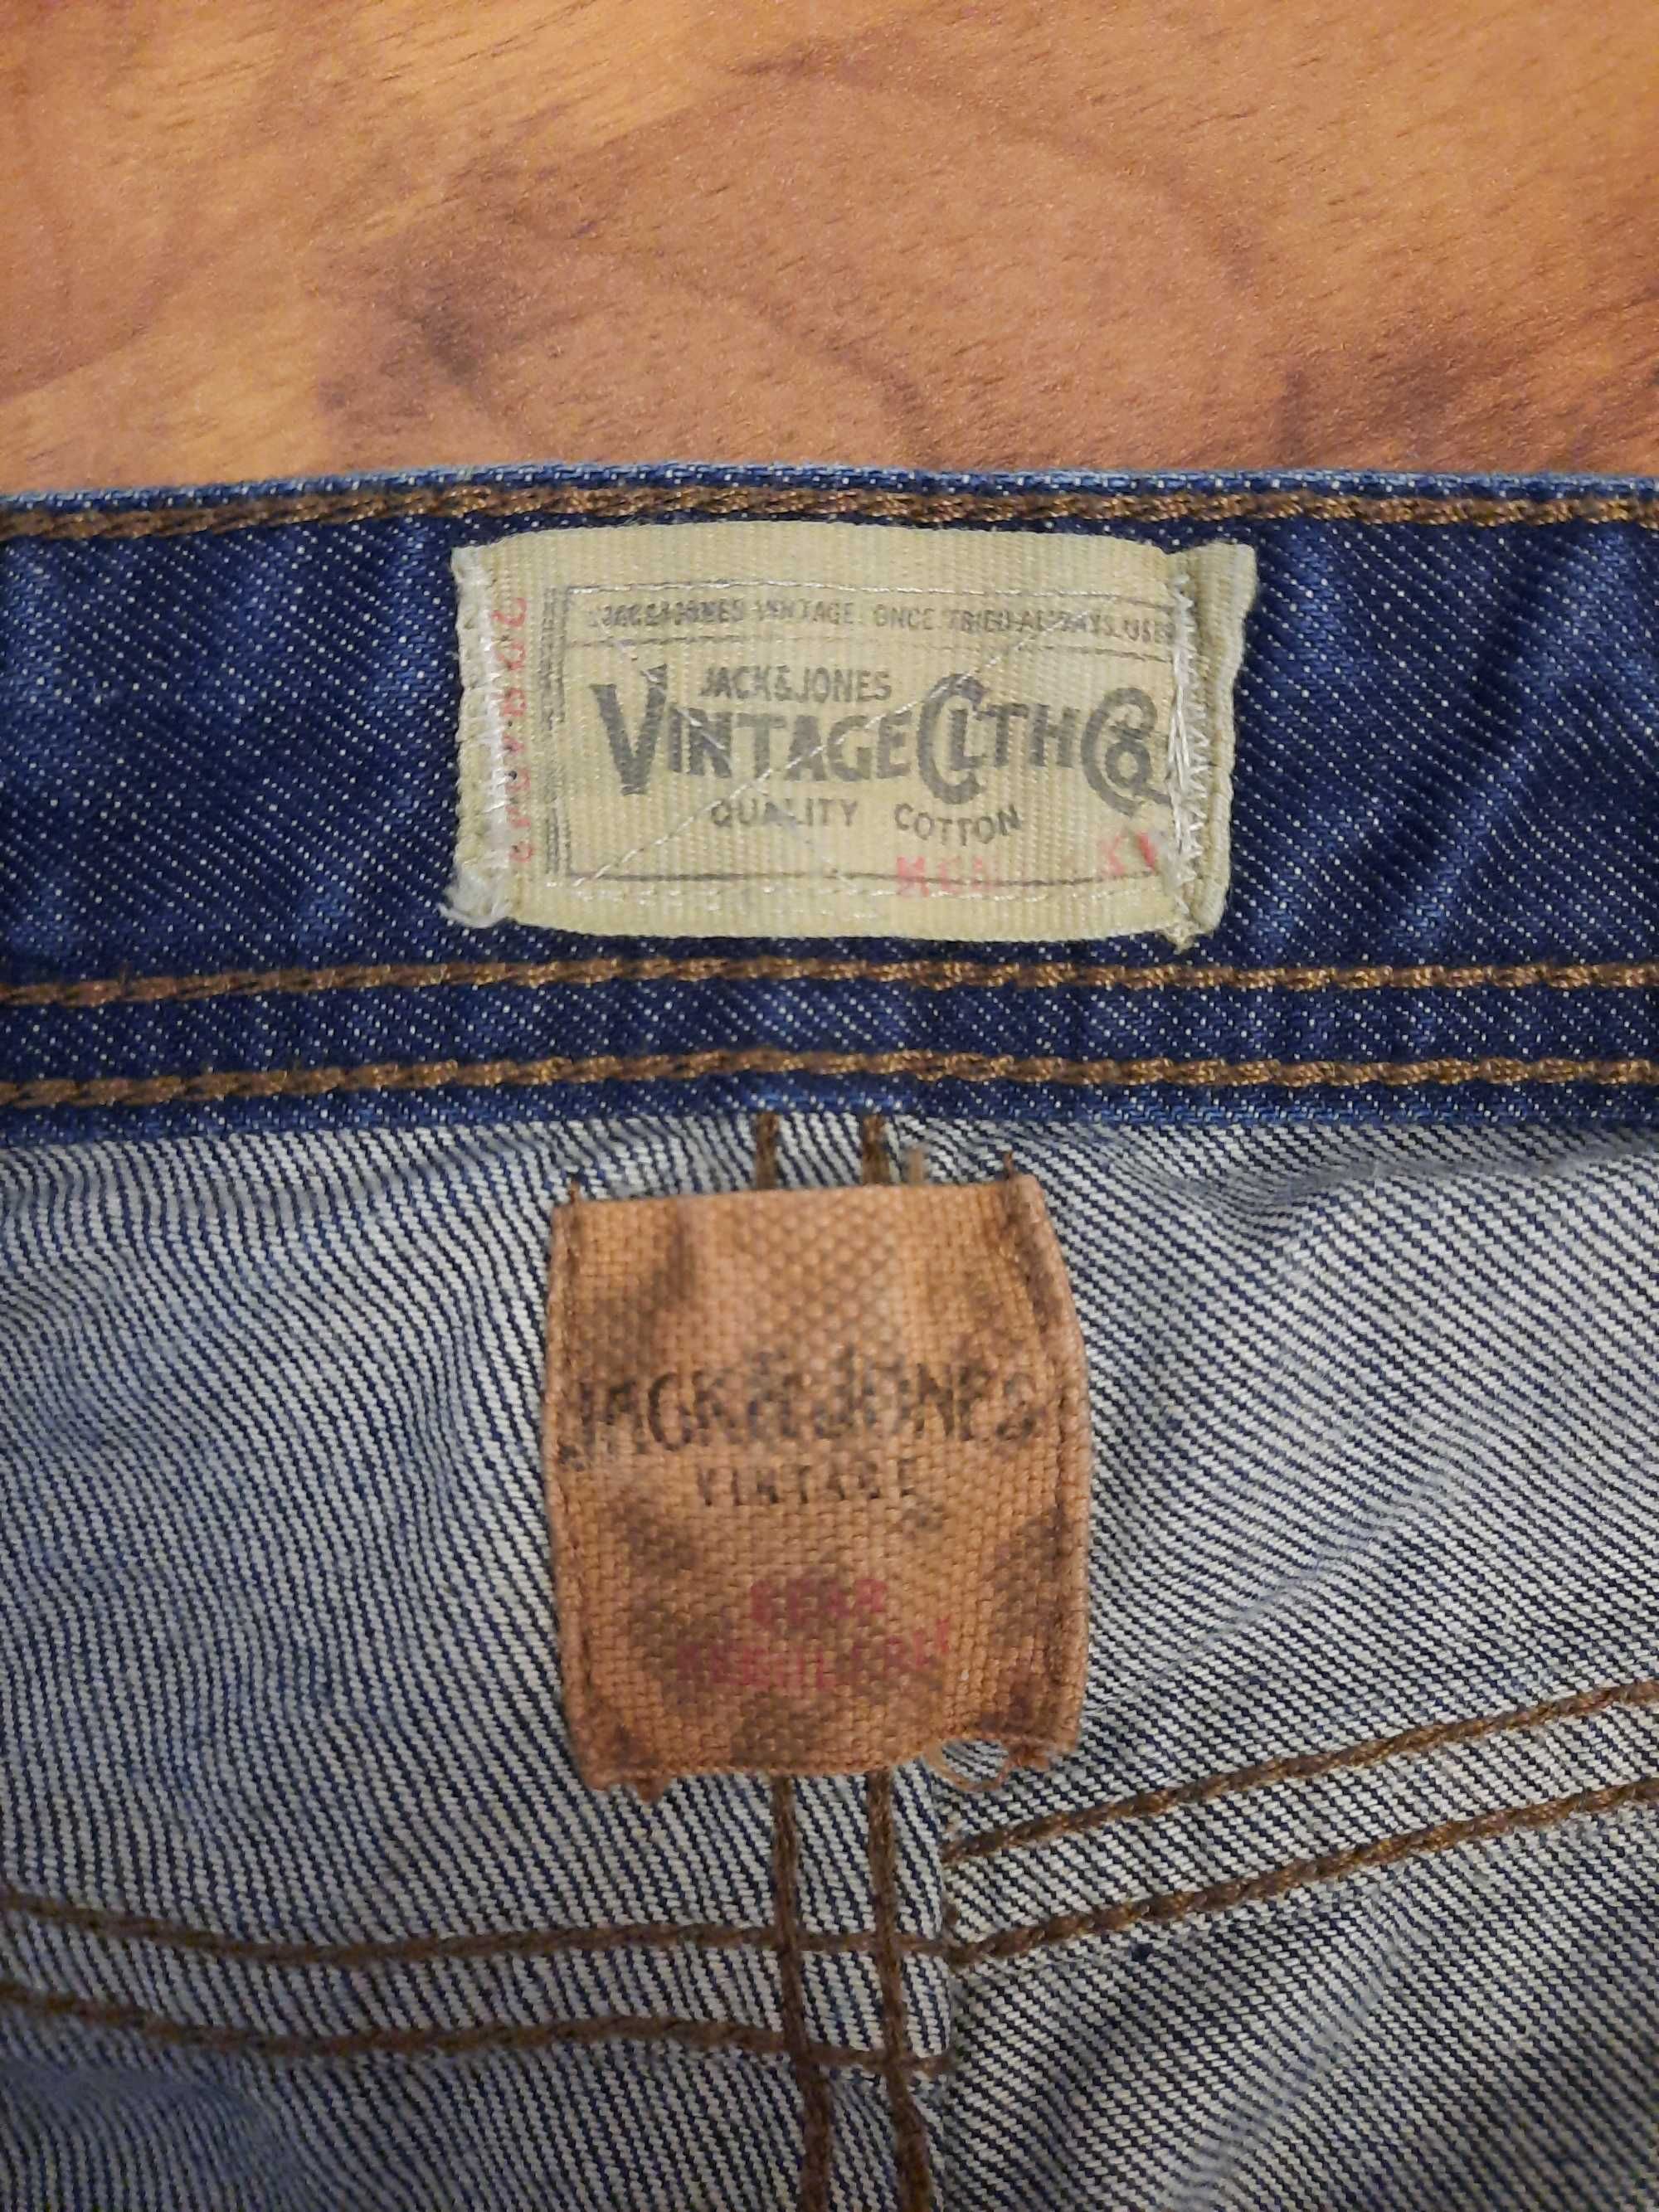 Luźne jeansy anti fit spodnie jeansowe Jack Jones Vintage W30L30